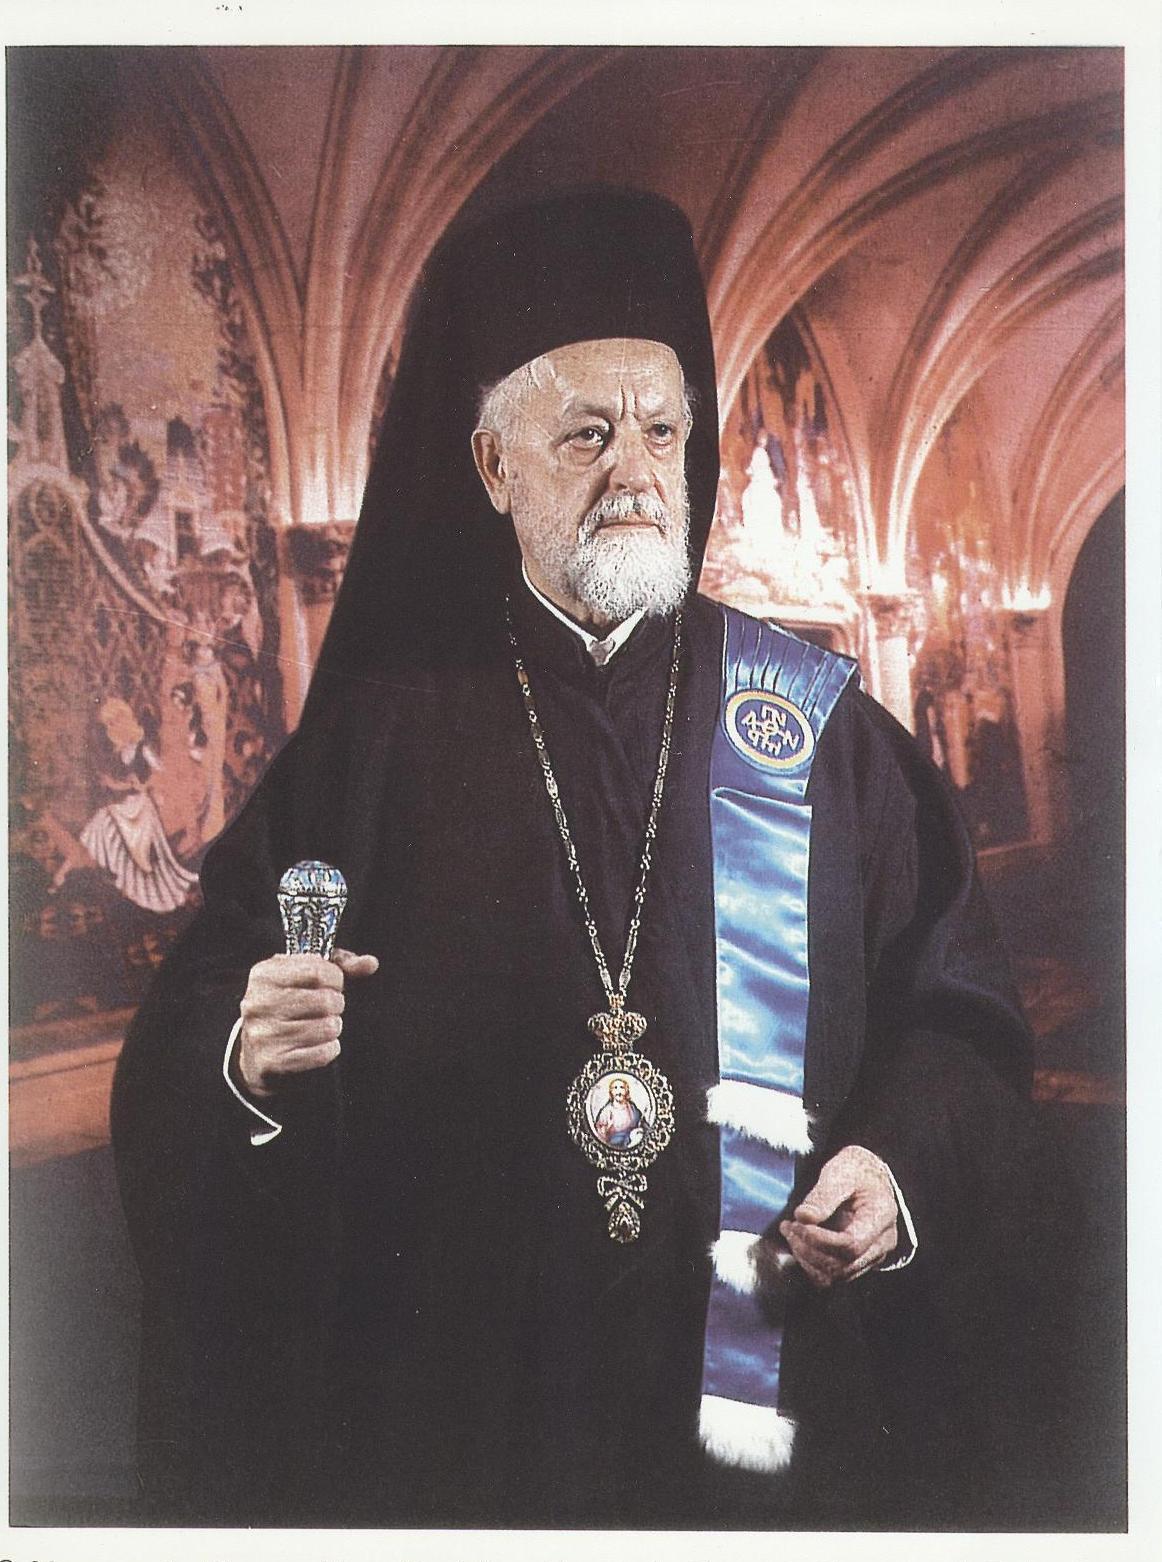 Παντελεήμων Καρανικόλας εκ Κρανιδίου 1919-2006